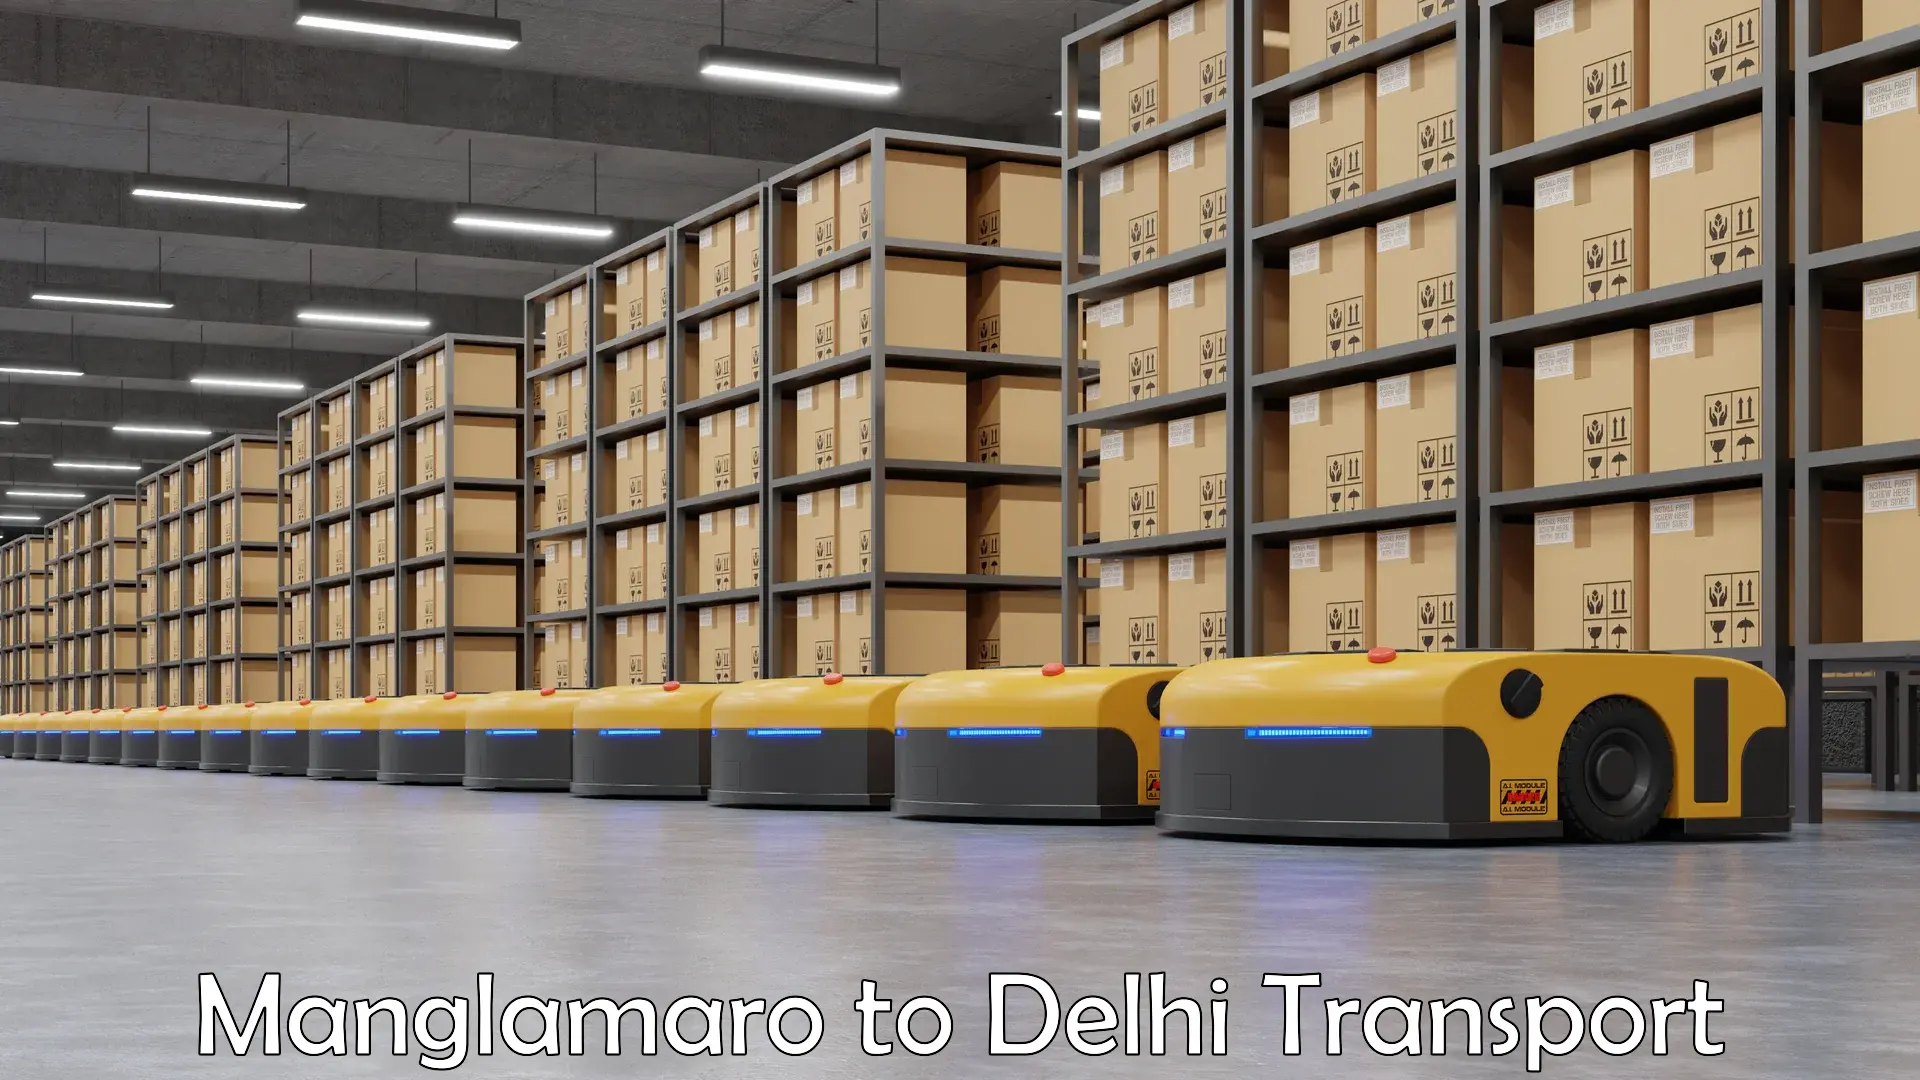 Land transport services Manglamaro to Naraina Industrial Estate